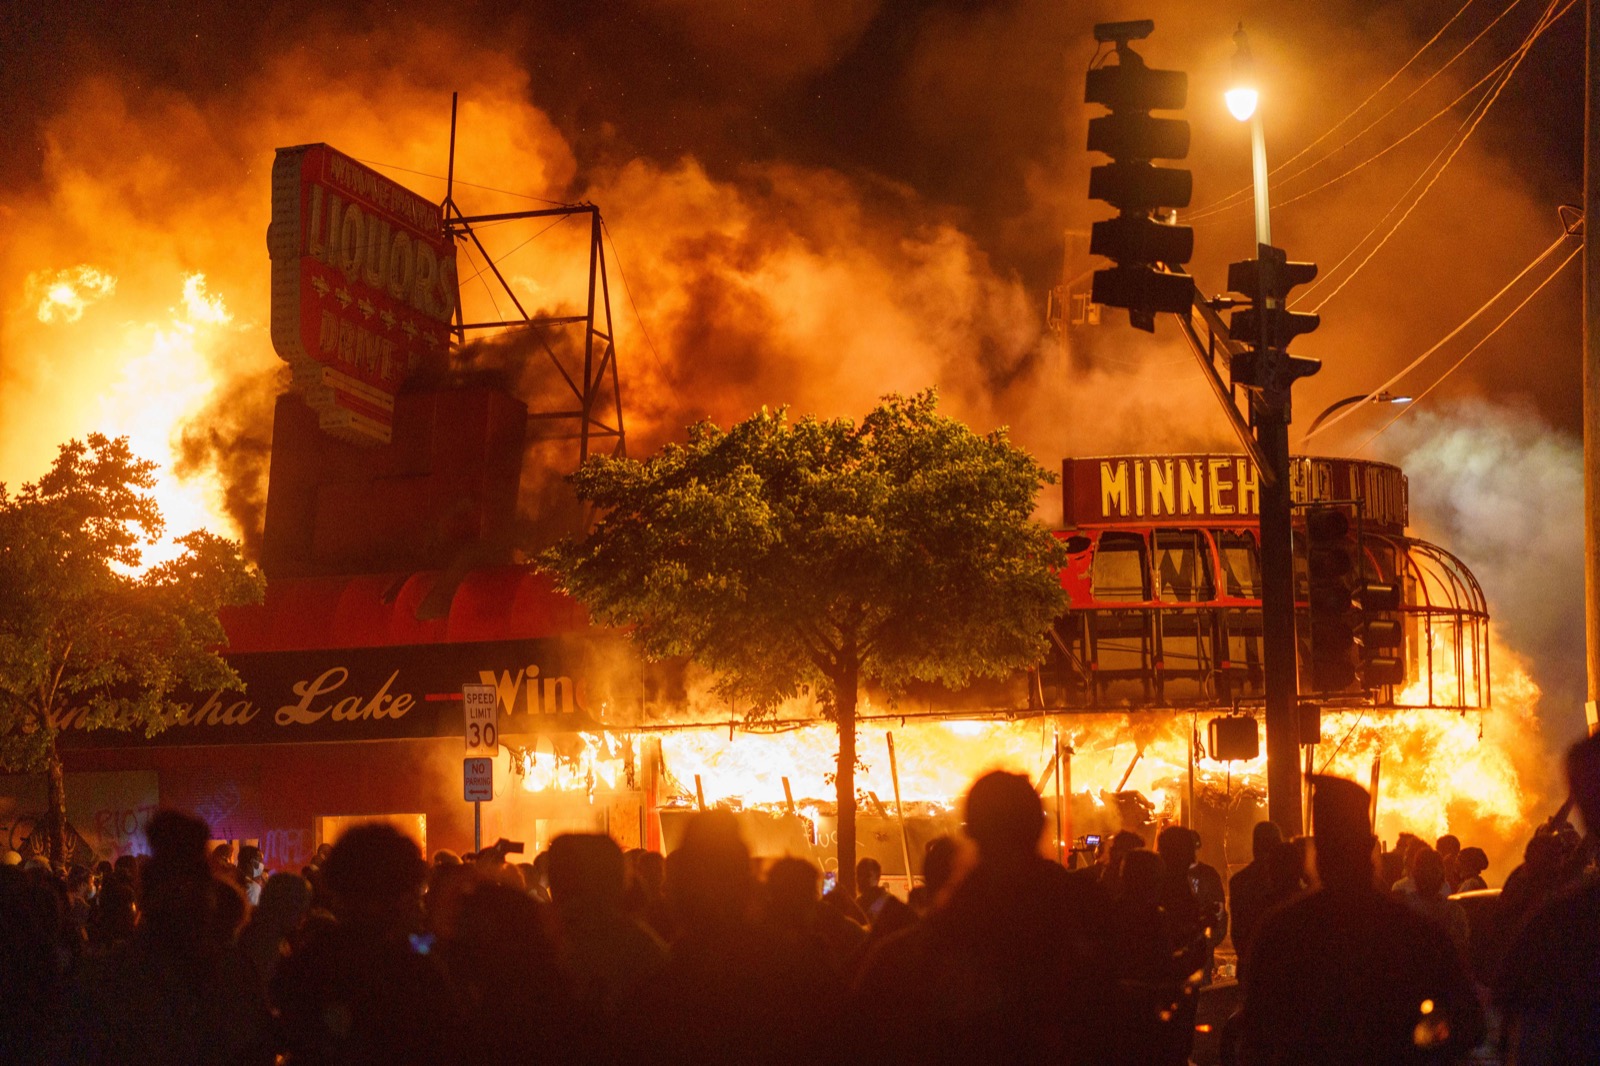 Cách người biểu tình đốt mọi thứ: Tưới xăng lên mọi thứ và bật lửa. Ảnh: KEREM YUCEL/AFP via Getty Images